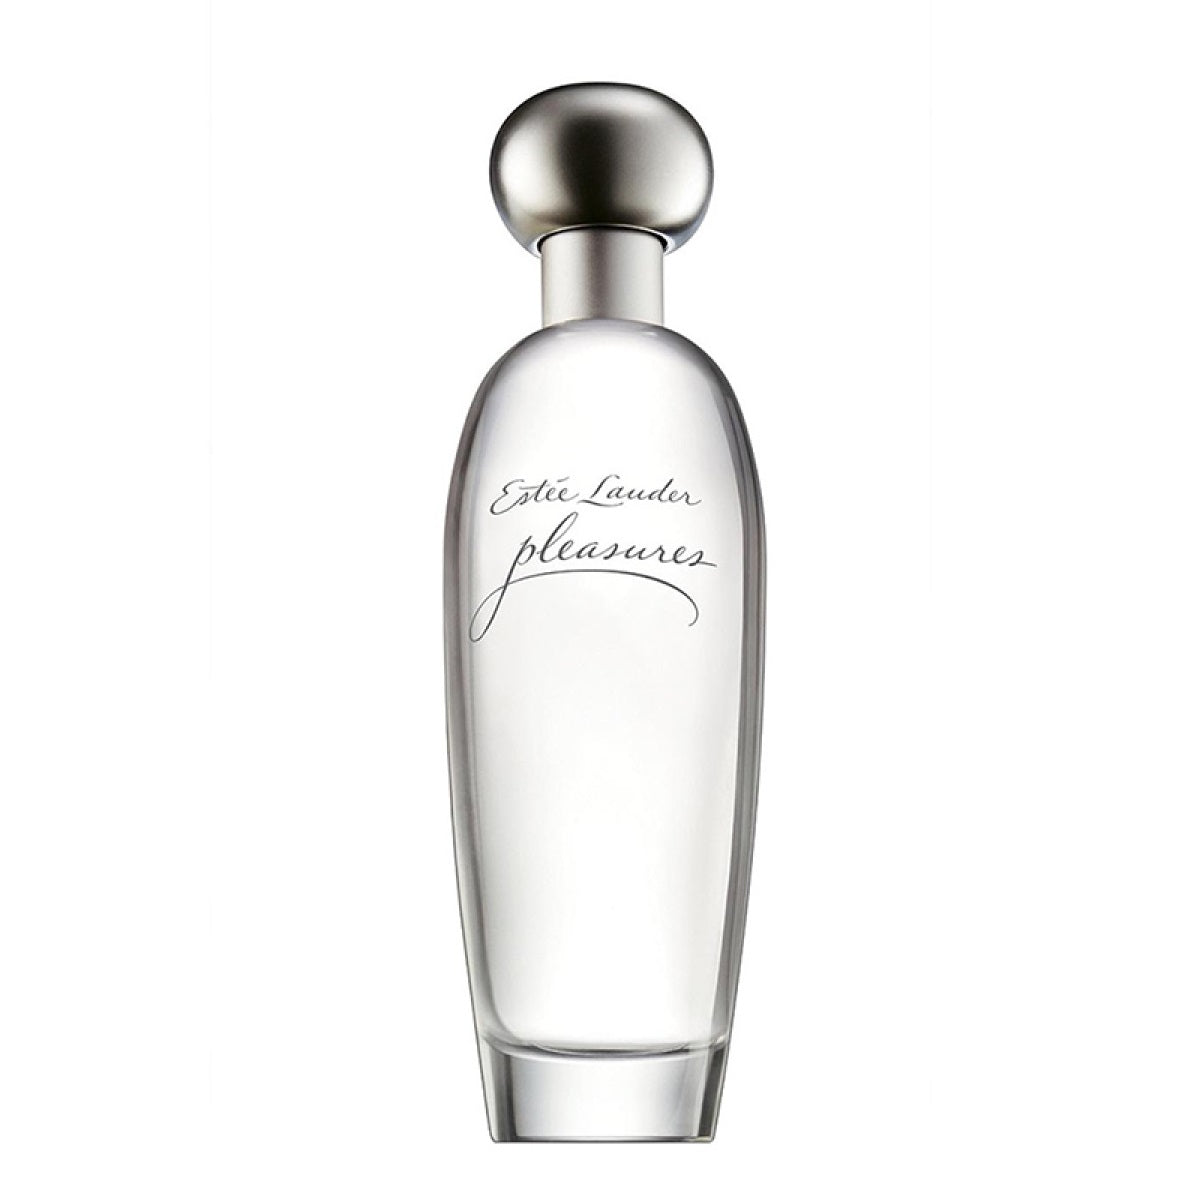 Estée Lauder Pleasures парфюмированная вода спрей 30мл парфюмерная вода спрей estée lauder pleasures intense 100 мл